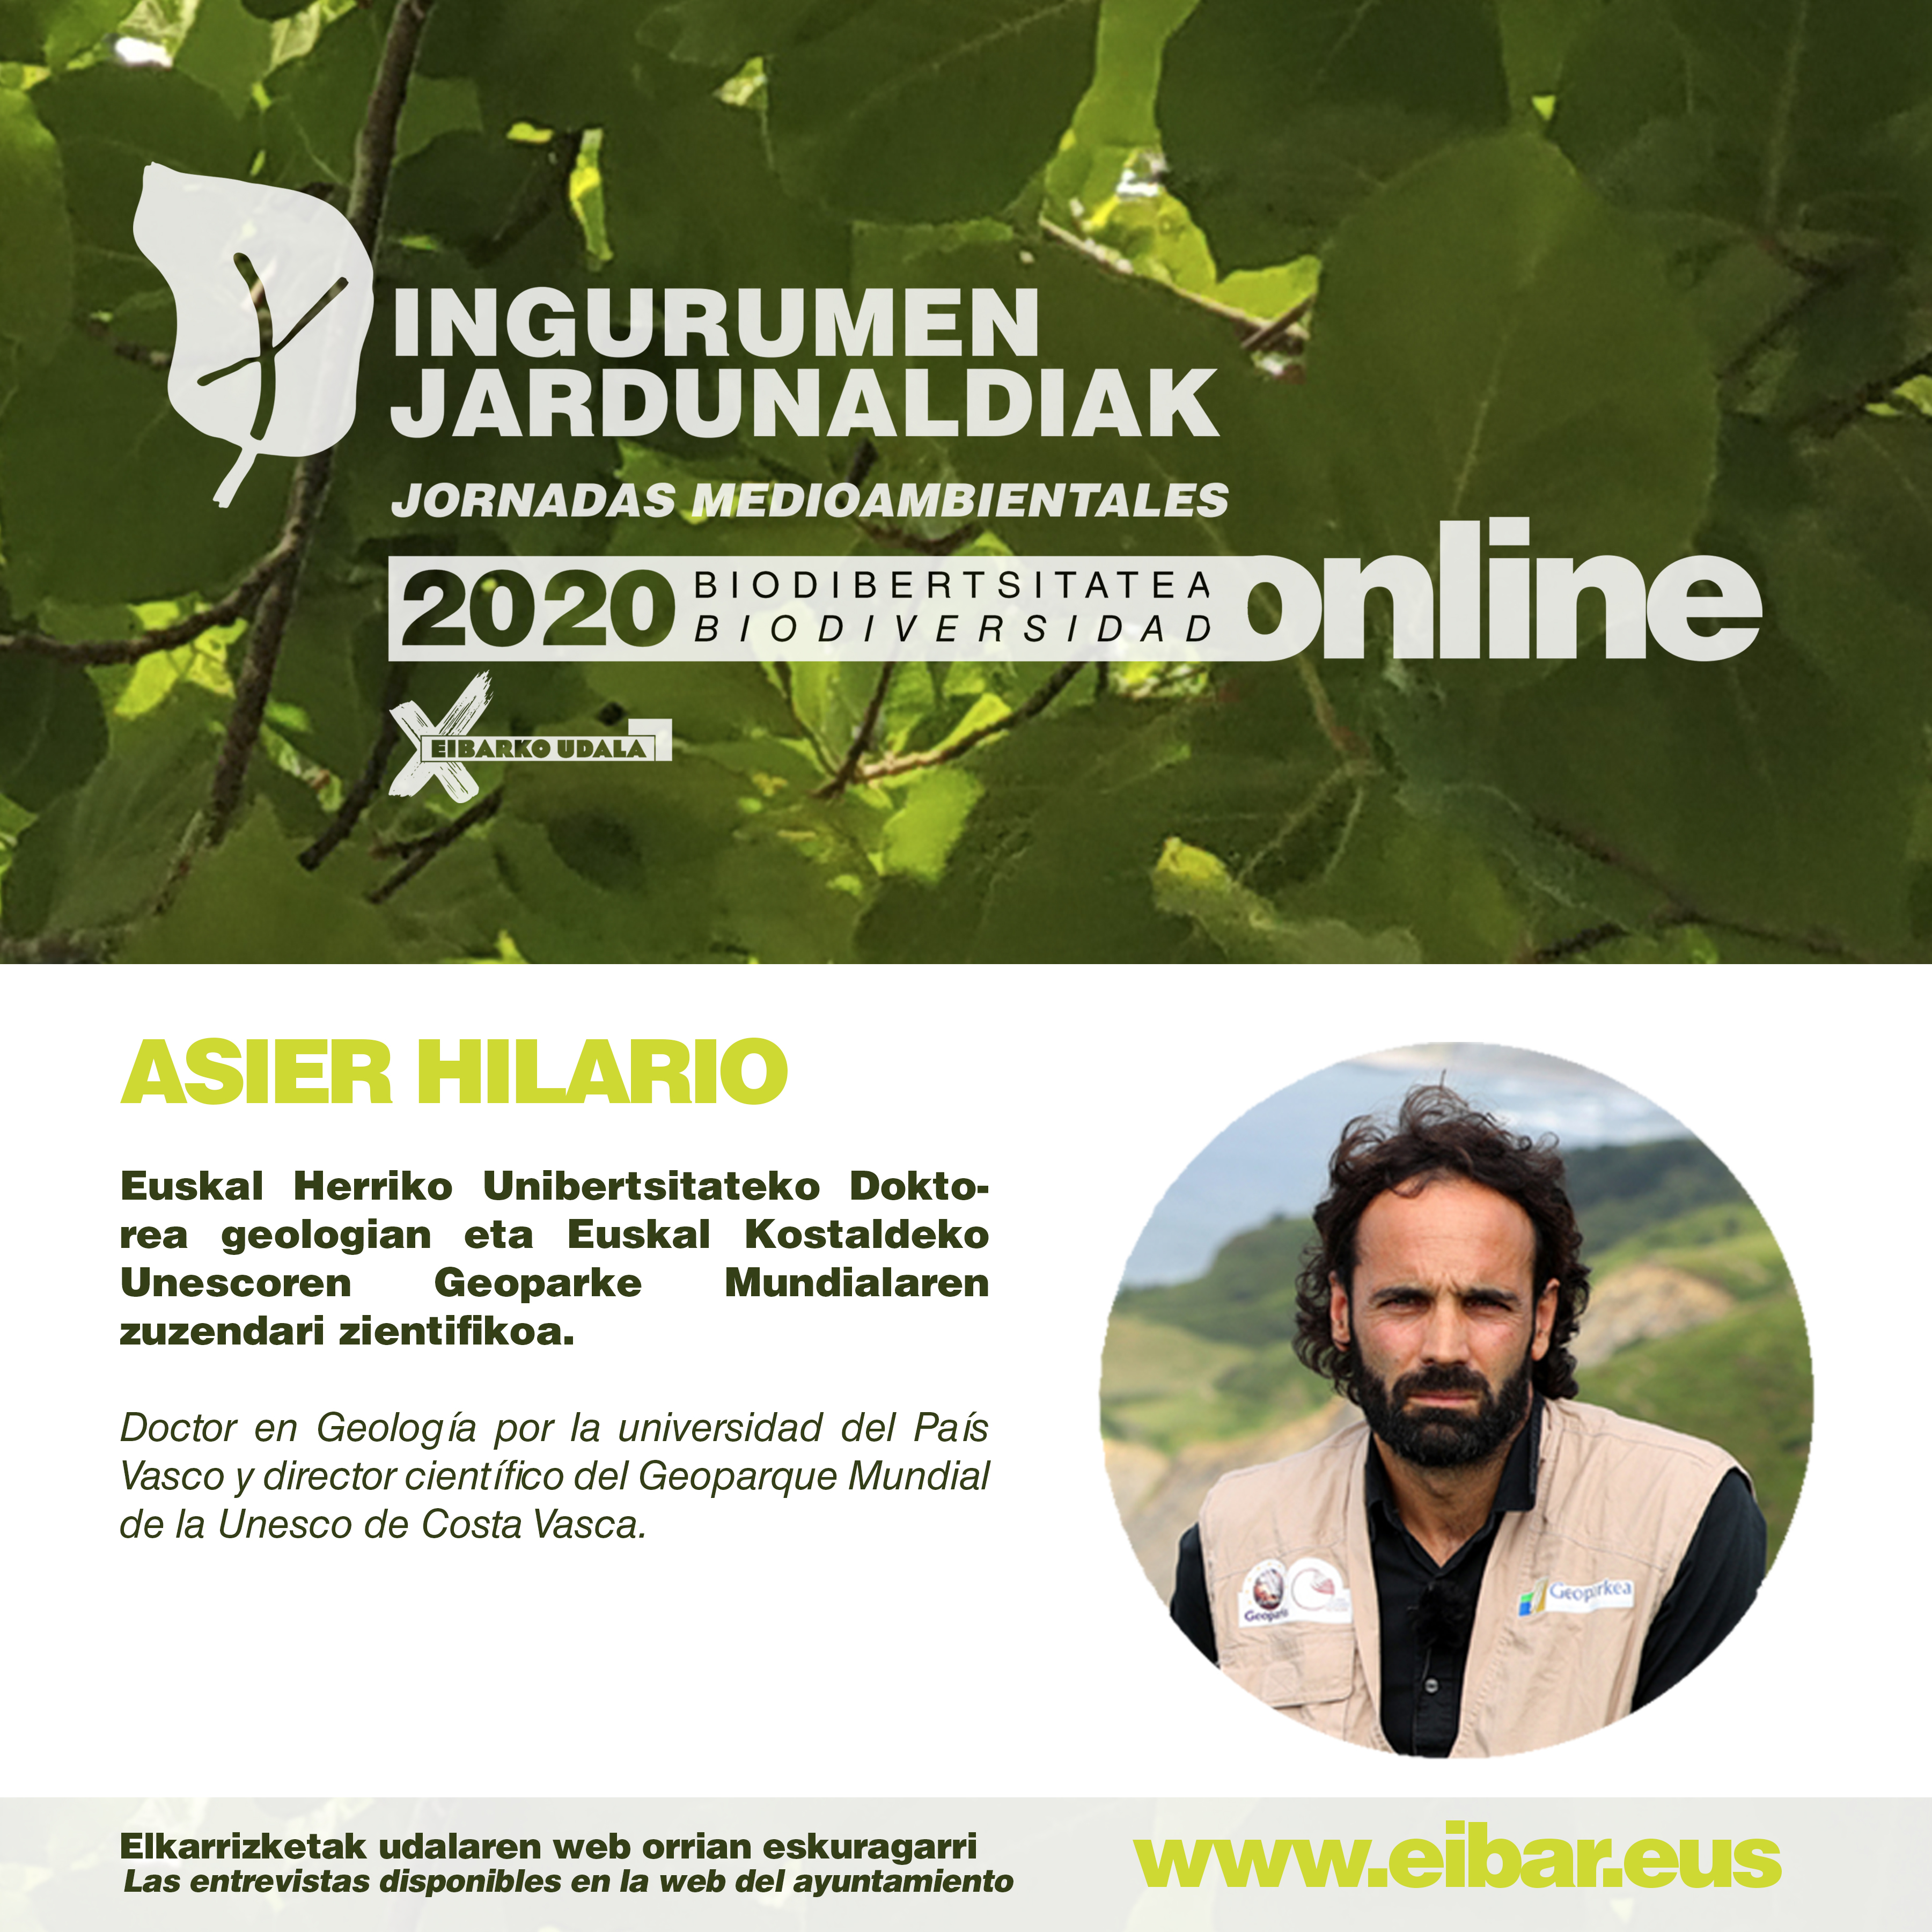 Jornadas Medioambientales: "Geodiversidad: la naturaleza detrás de la naturaleza", entrevista realizada a Asier Hilario 